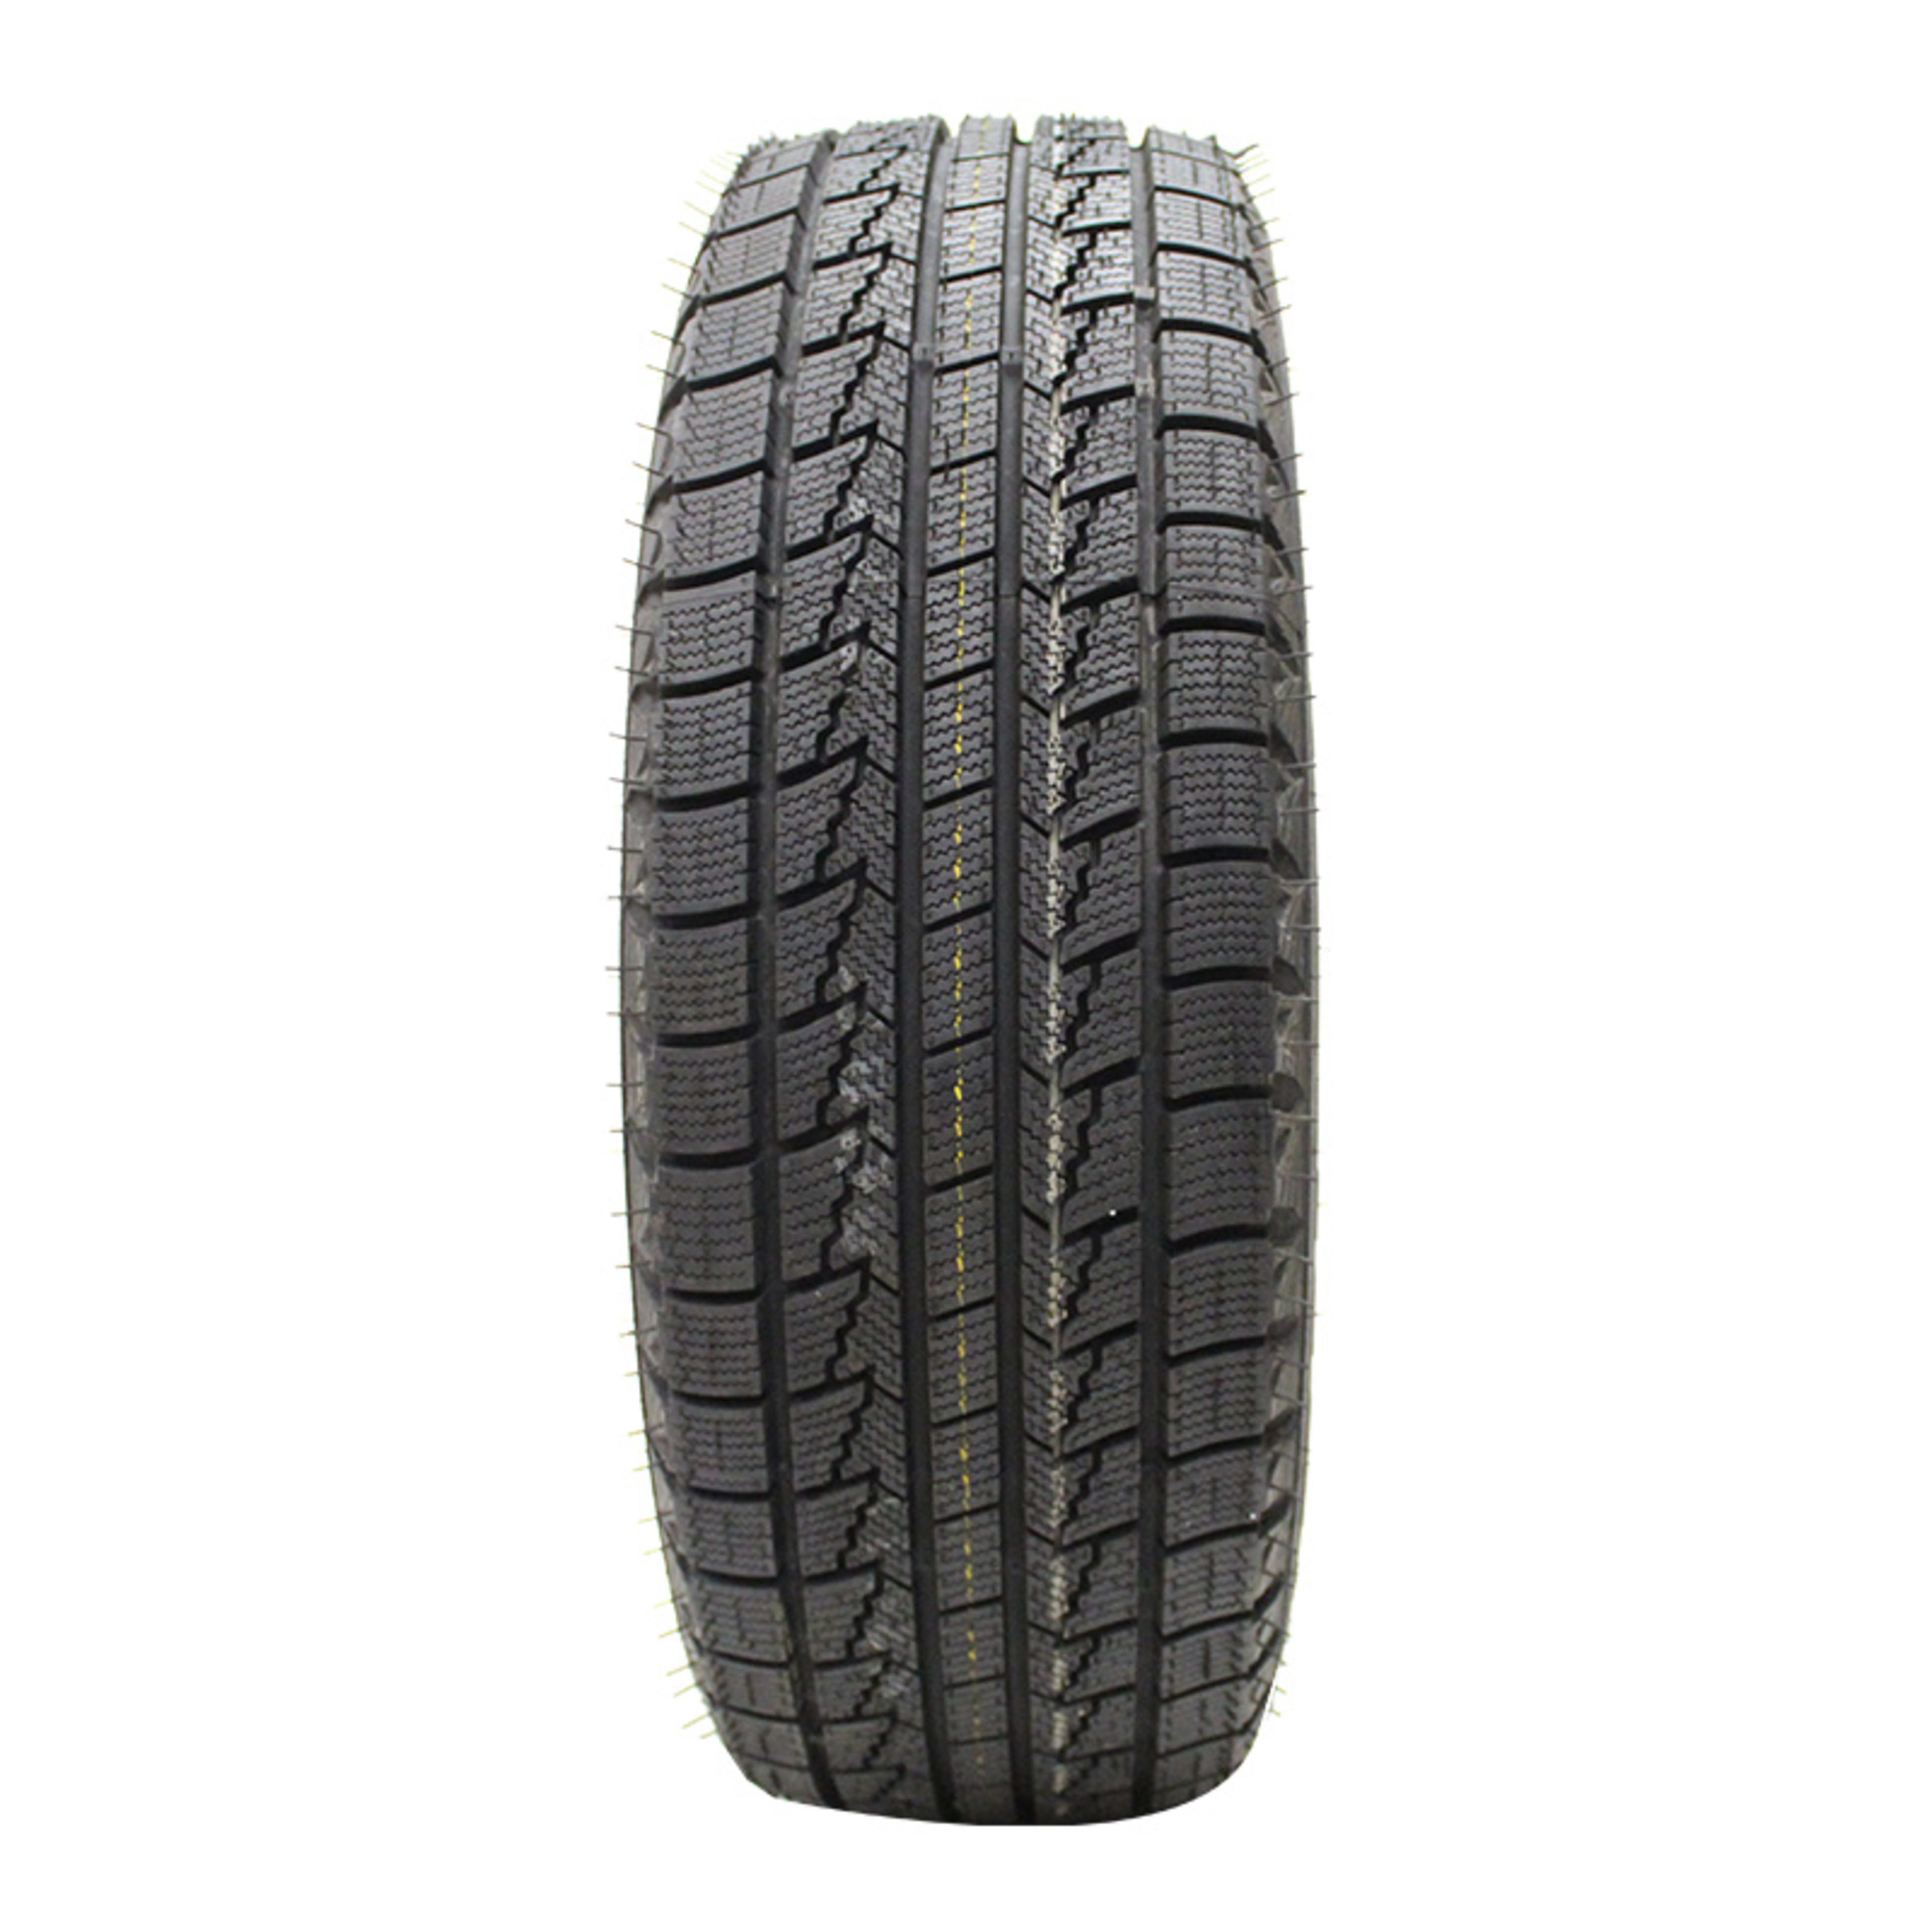 Buy Nexen Winguard Ice Online | SimpleTire Tires